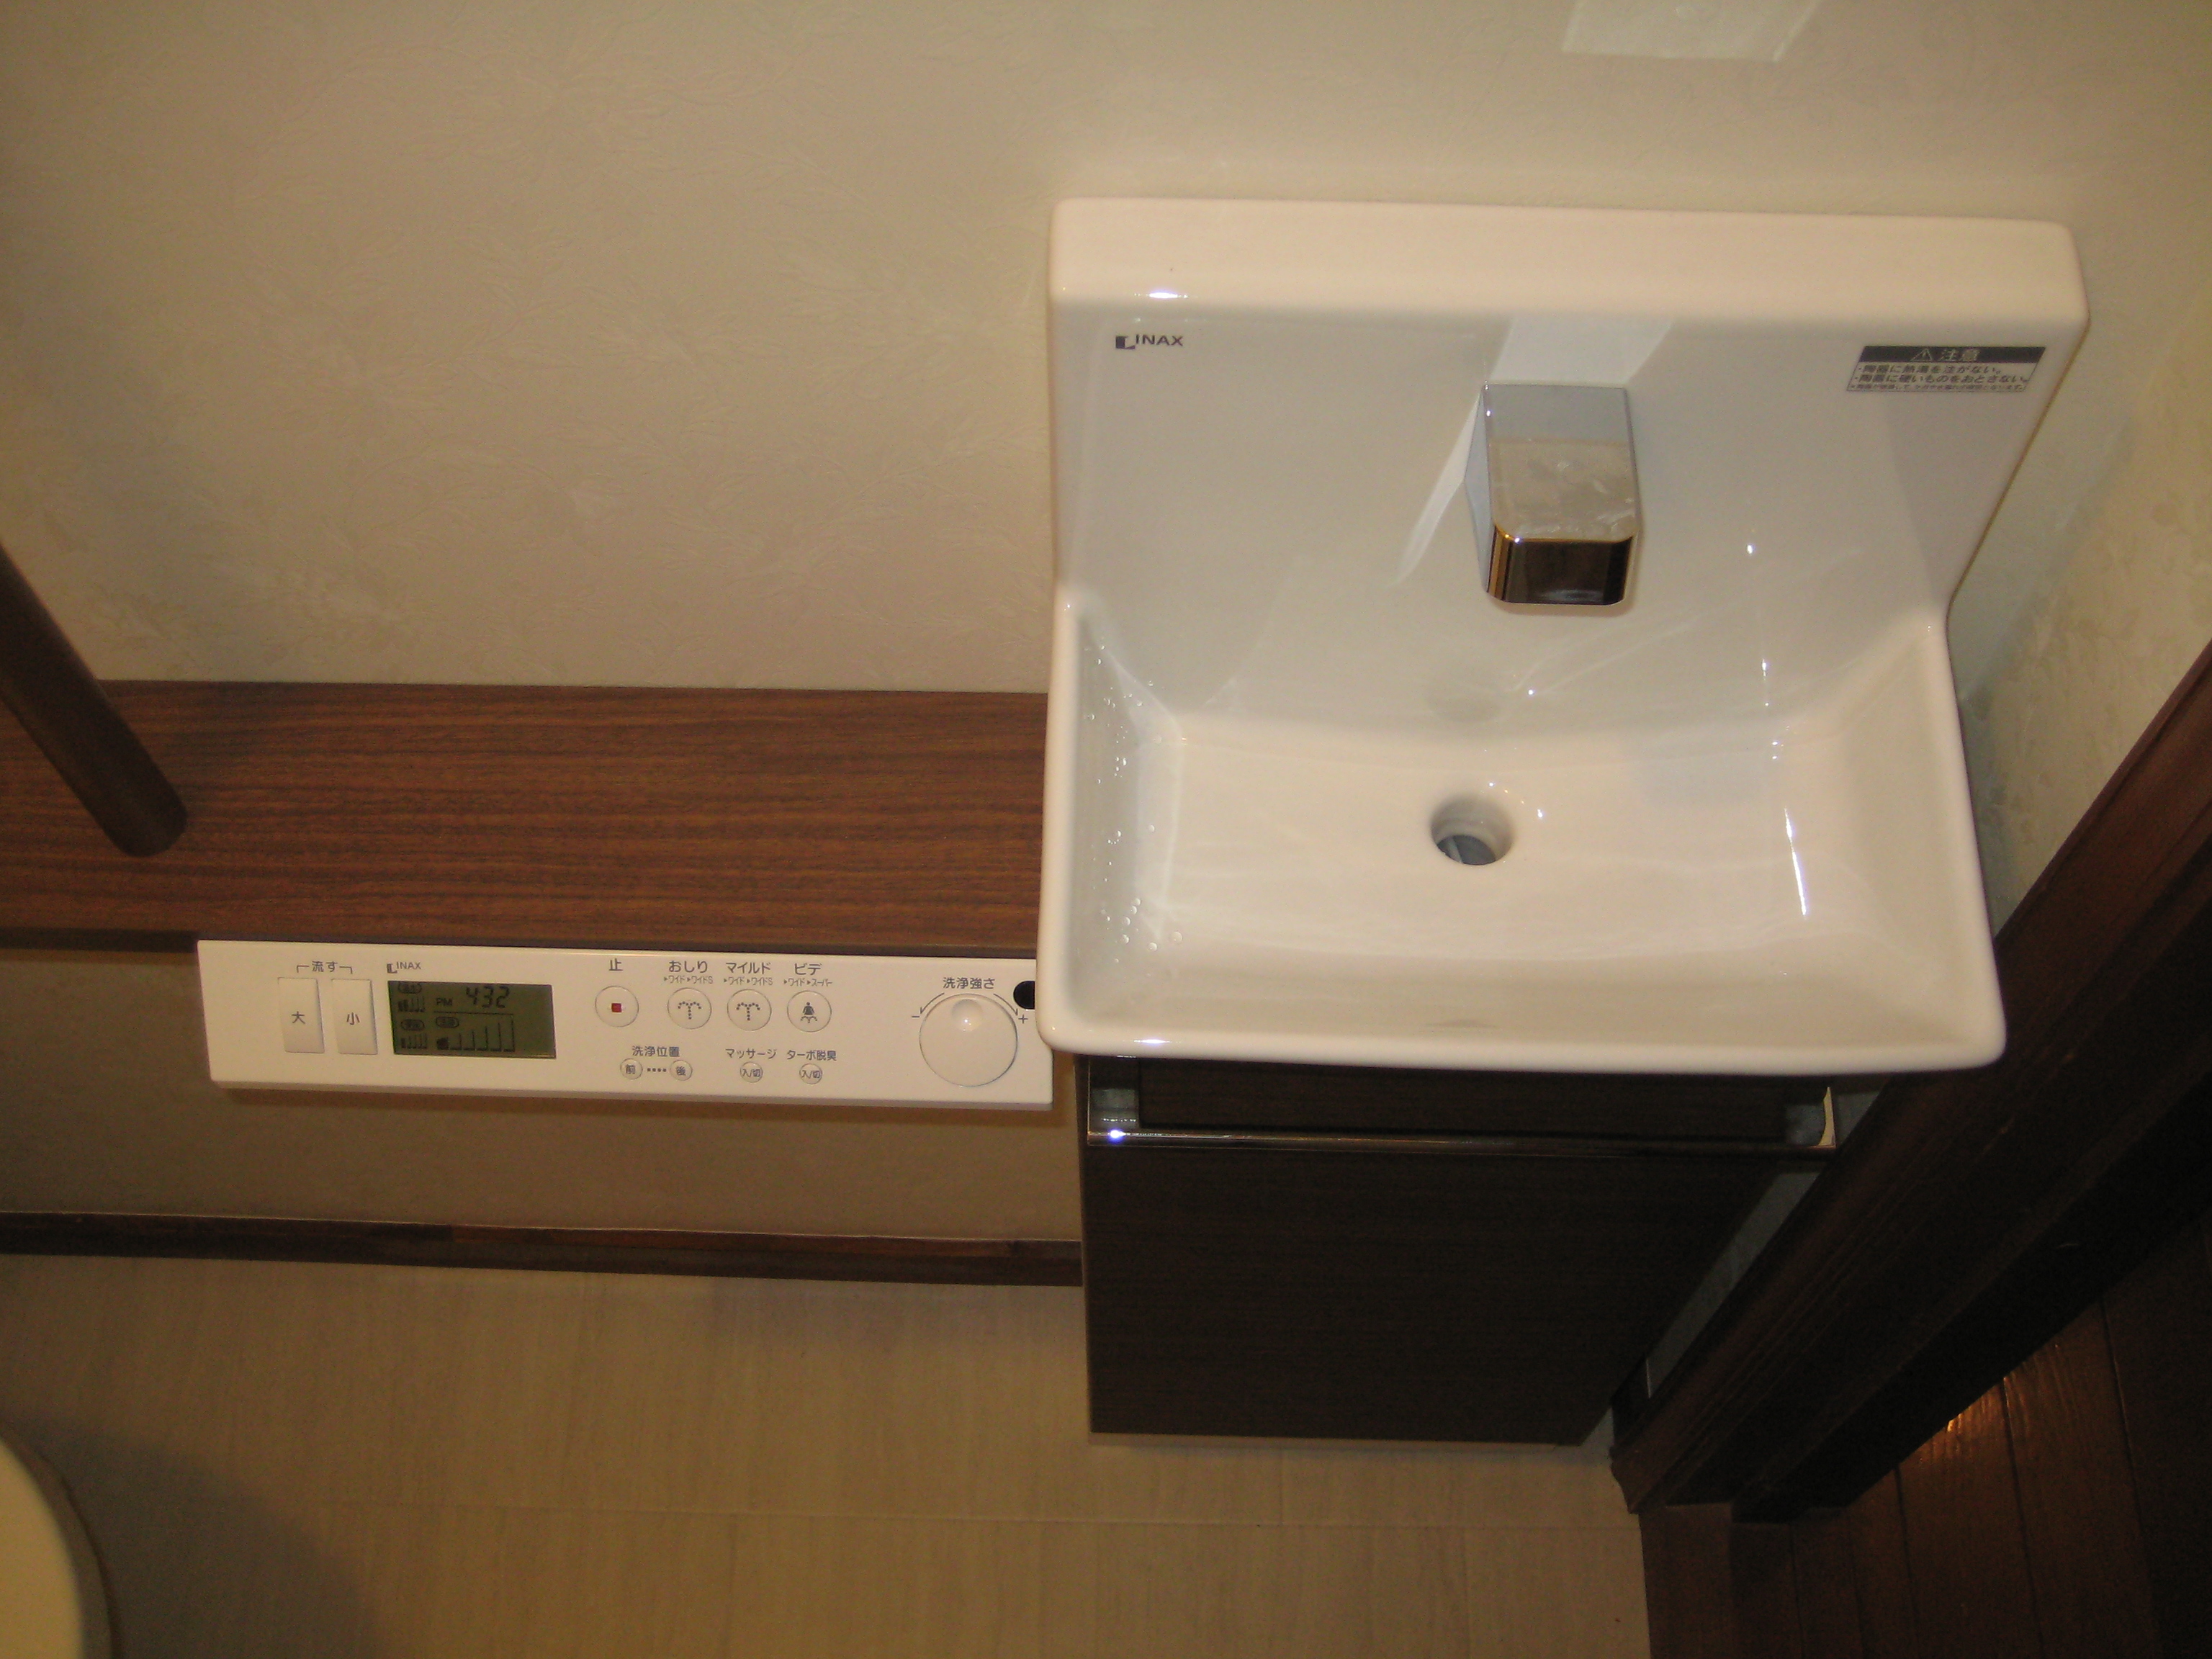 トイレリフォーム タンクレストイレに自動水栓式手洗いカウンター 一戸建て リフォーム事例 Lixilリフォームネット